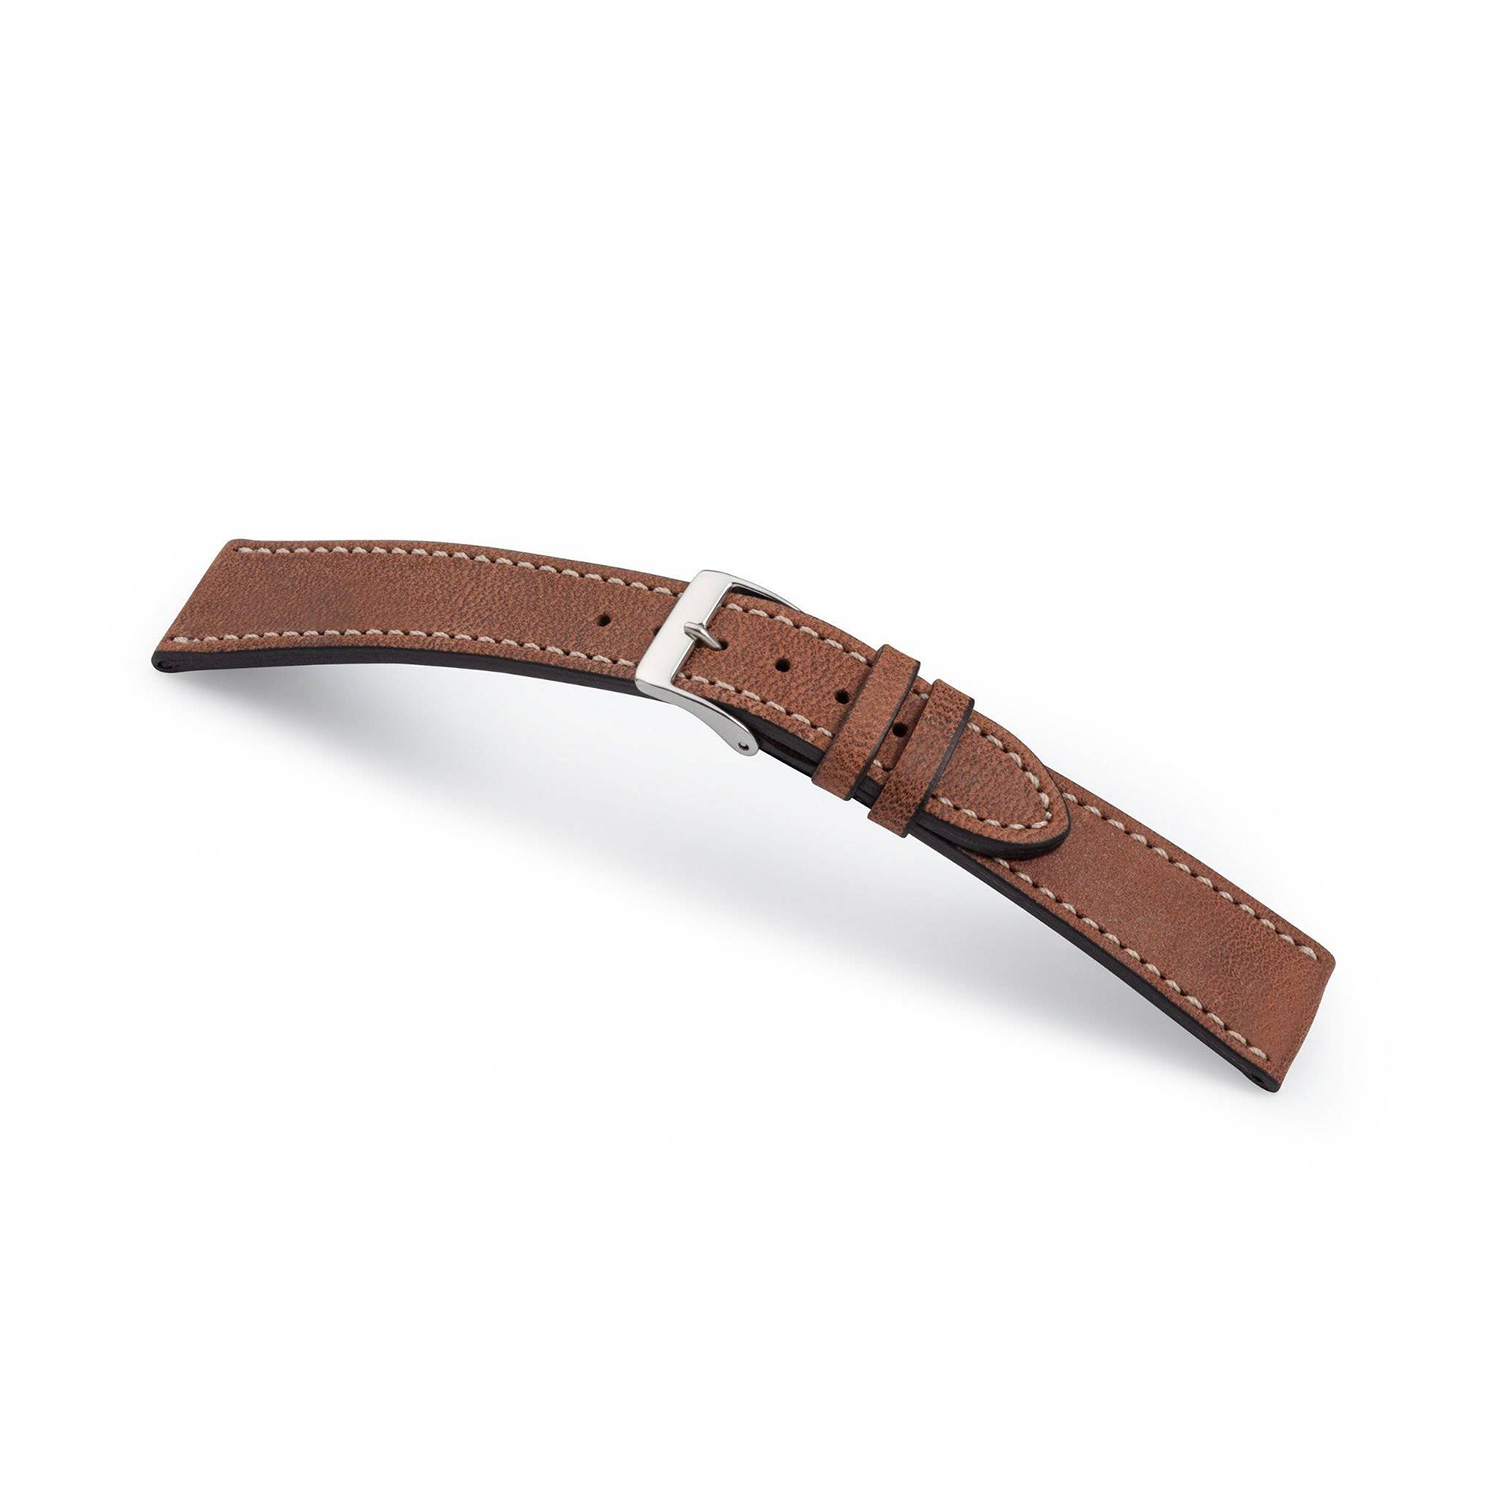 Manufakturwerk leather strap Hoheluft brown 20/16